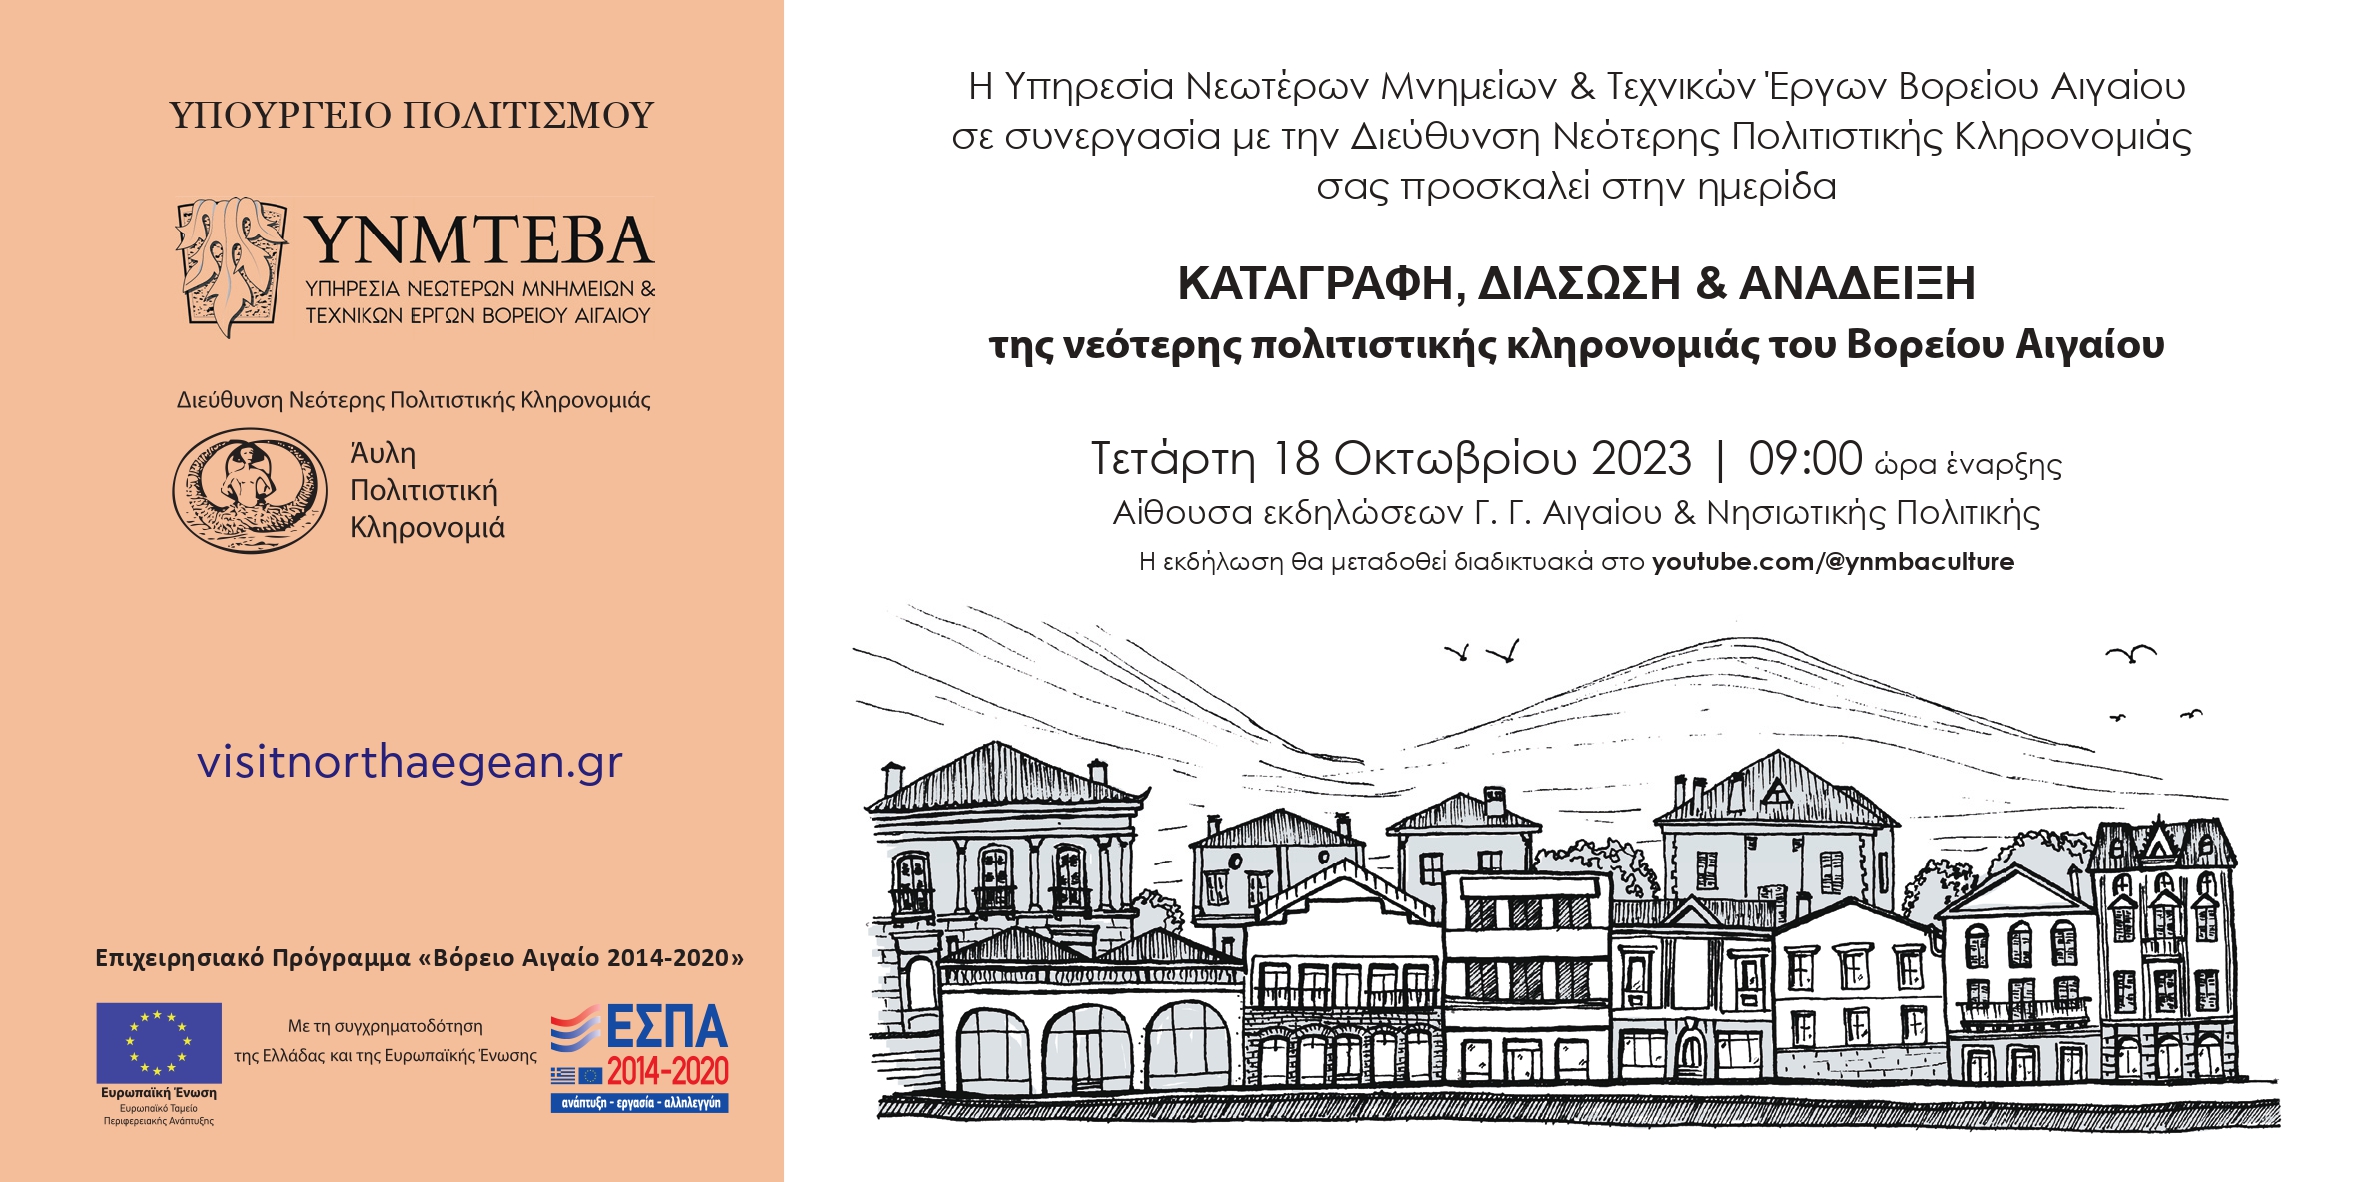 «Καταγραφή, Διάσωση & Ανάδειξη της νεότερης πολιτιστικής κληρονομιάς του Βορείου Αιγαίου» ημερίδα στη ΓΓ Αιγαίου